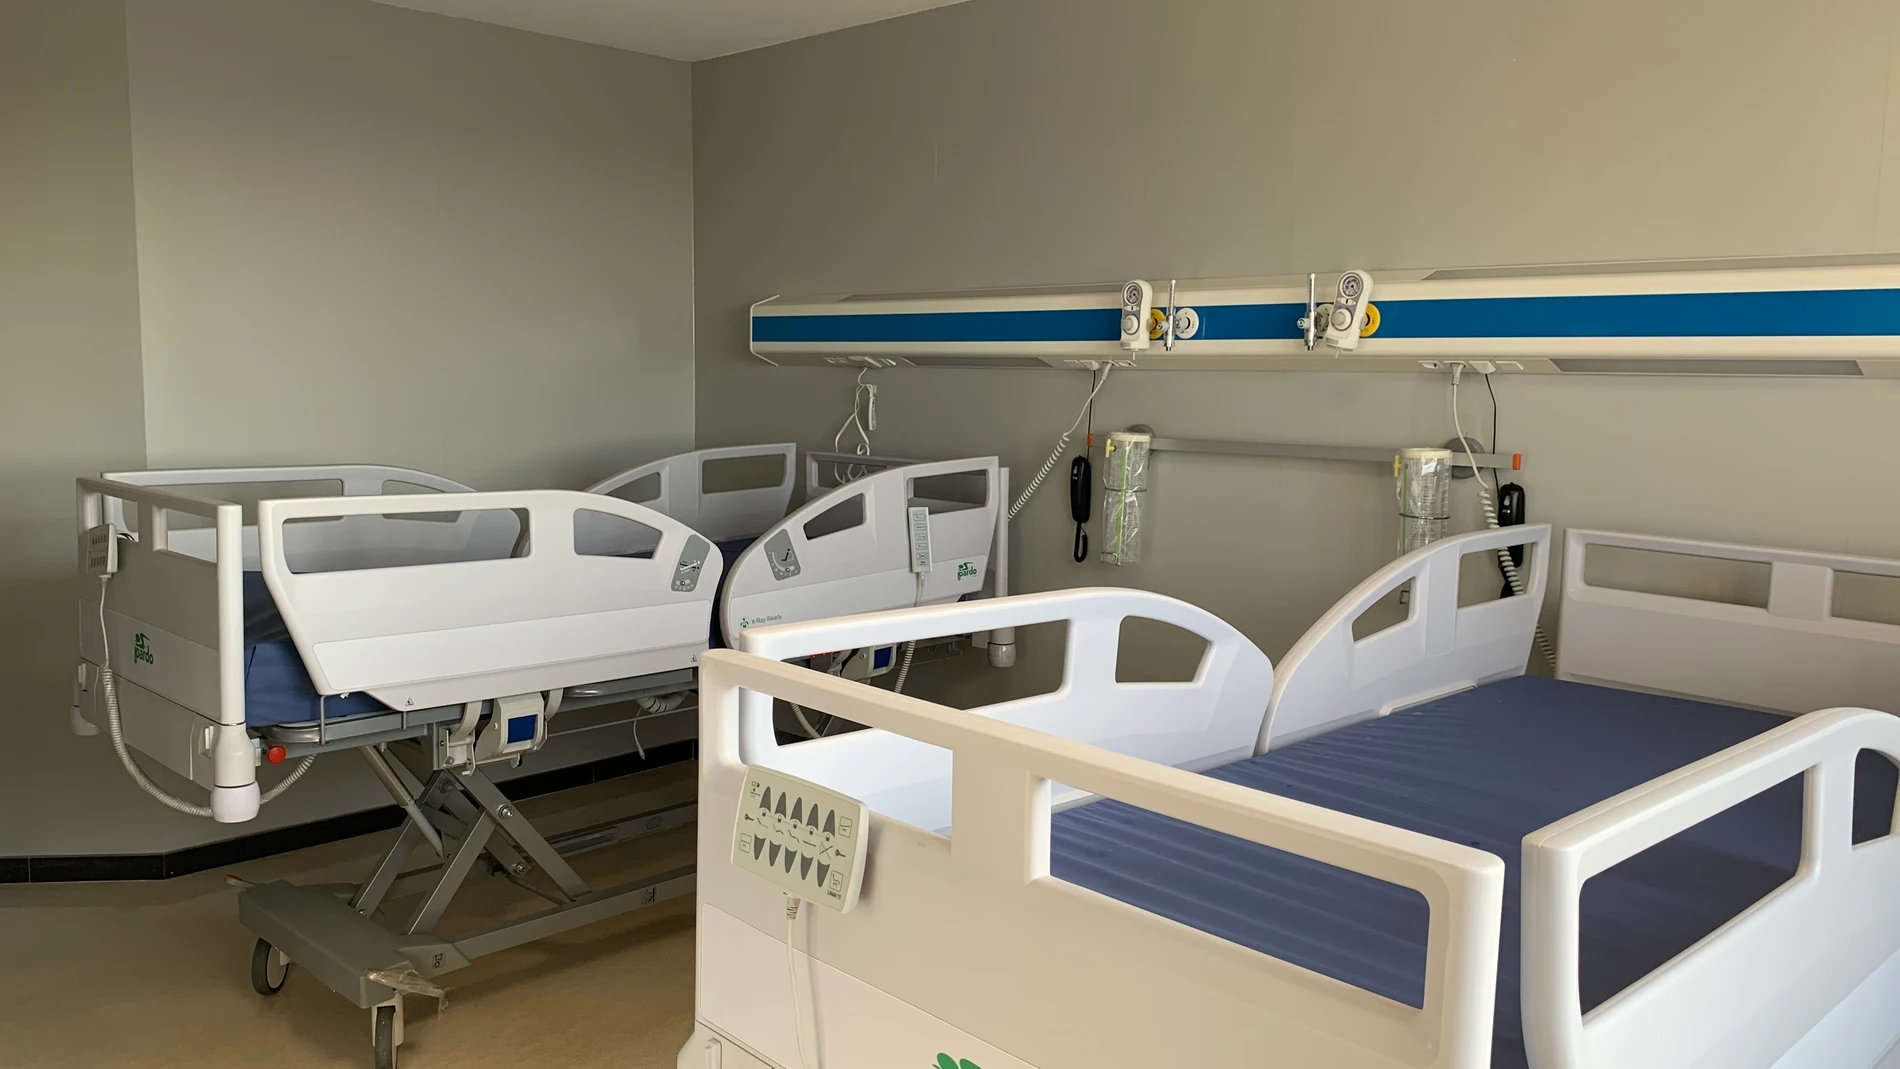 Imagen de una habitación de aislamiento en un hospital malagueño